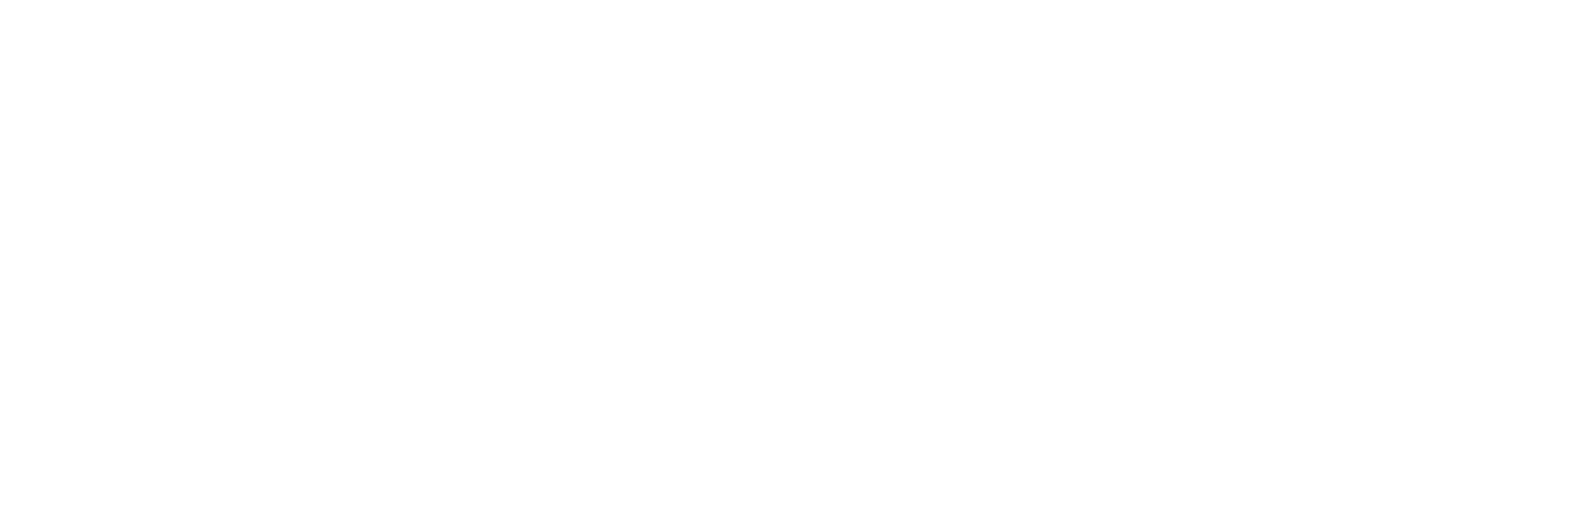 real-developer-logo-white